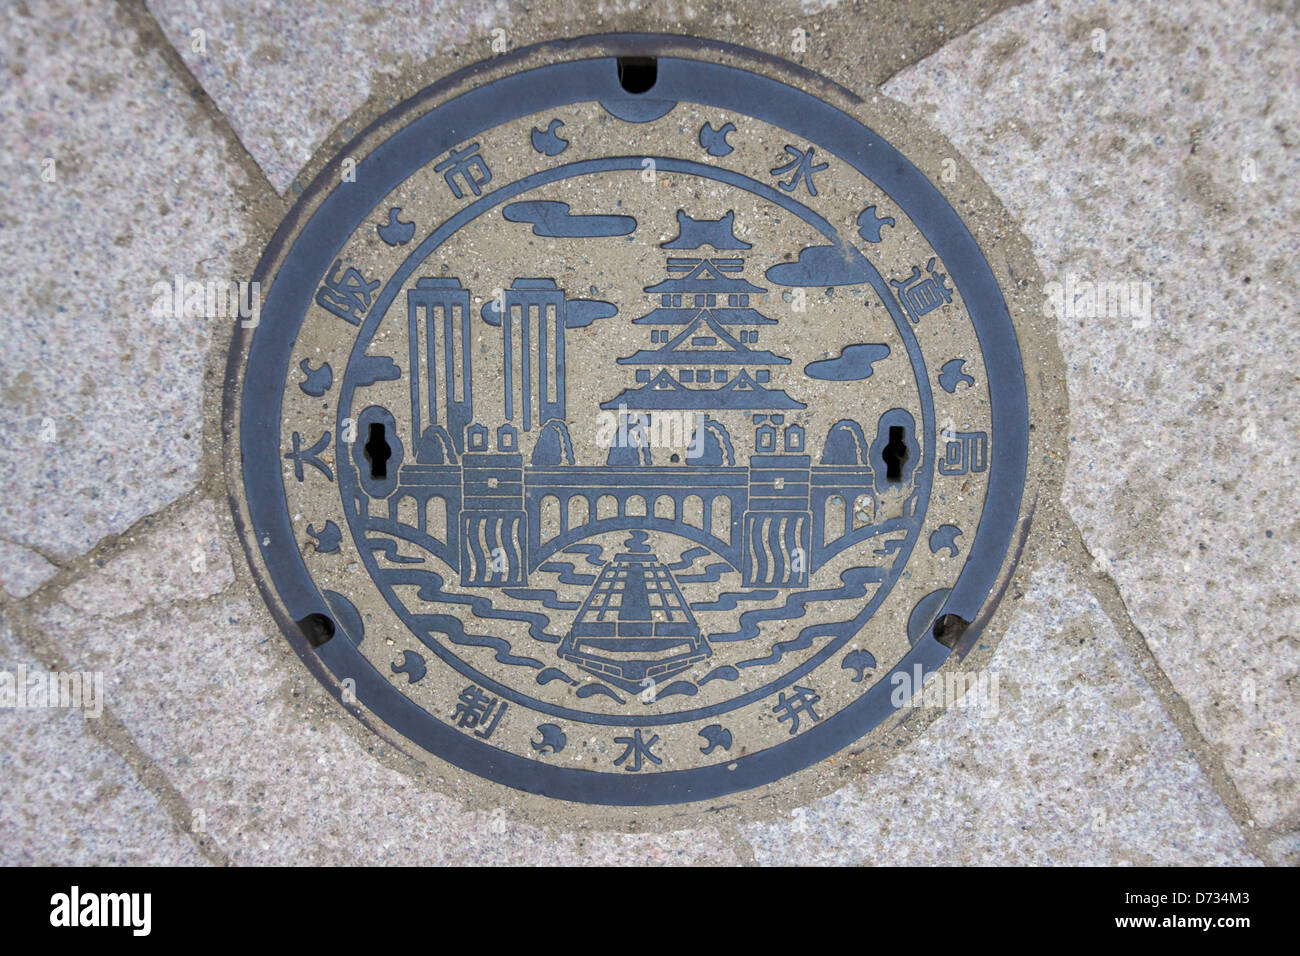 Sewer cover depicting Osaka skyline, Osaka, Japan Stock Photo